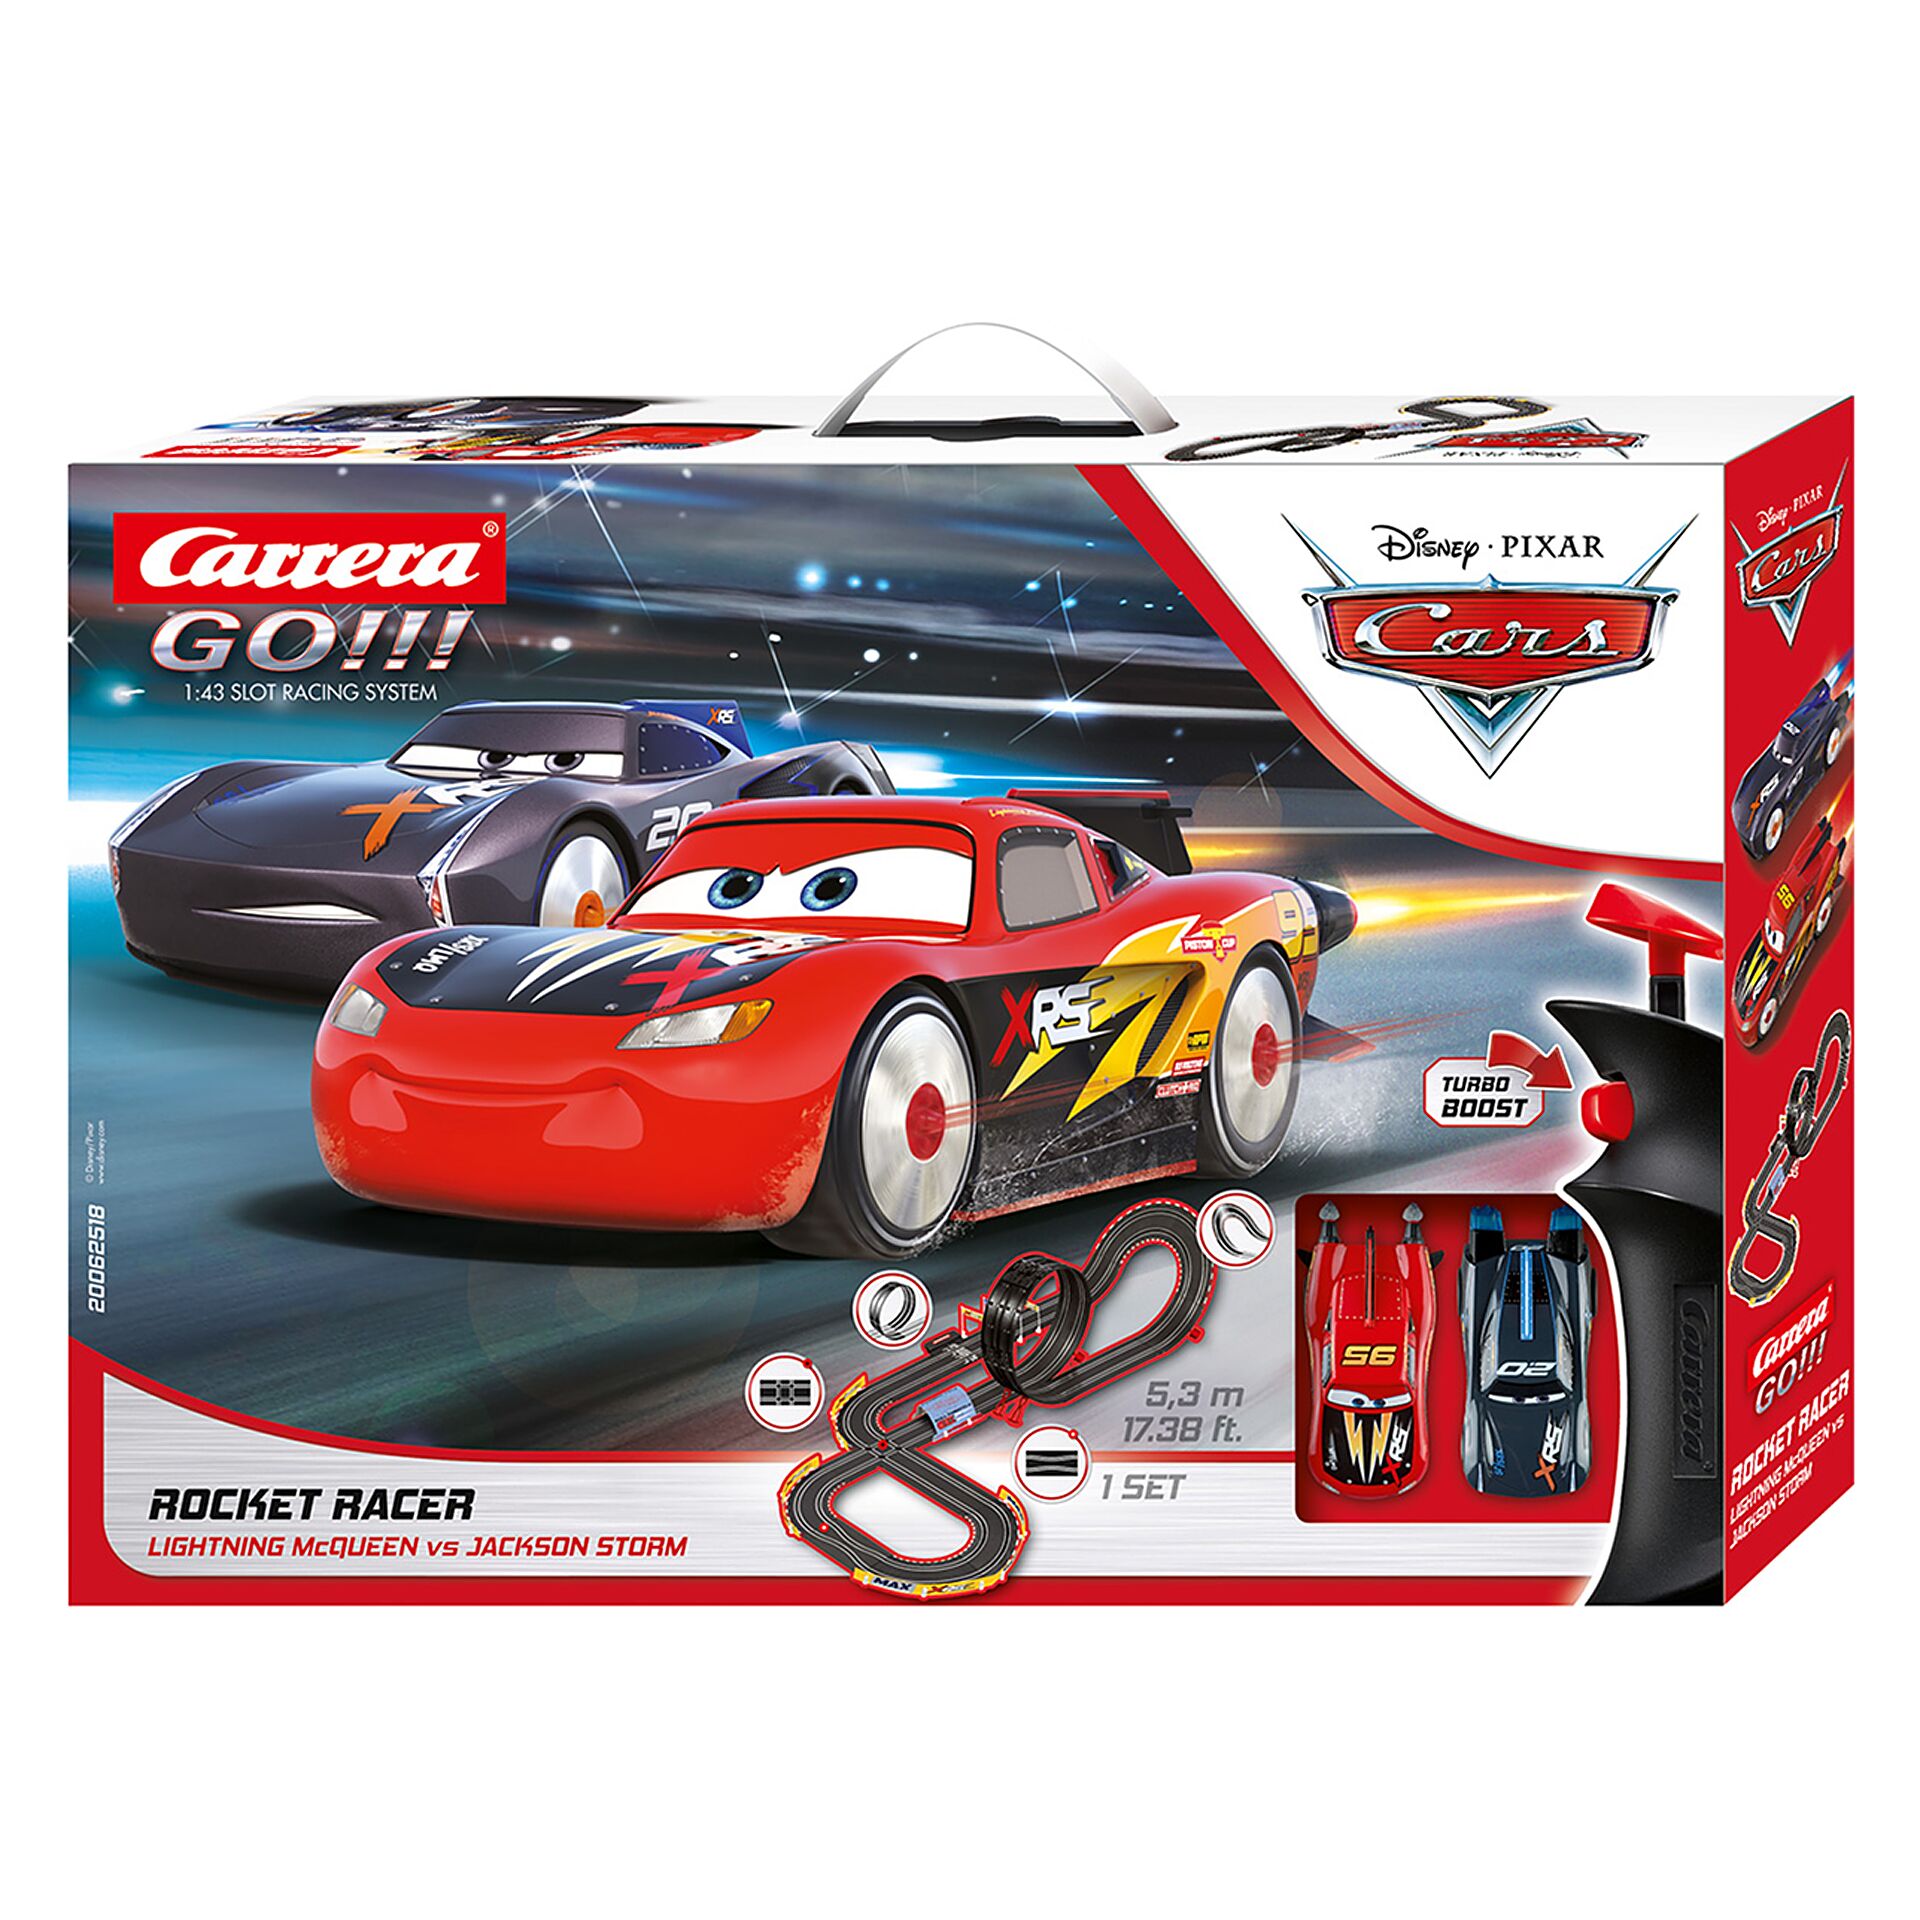 Carrera GO!!! Set - Disney Pixar Cars Rocket Racer 